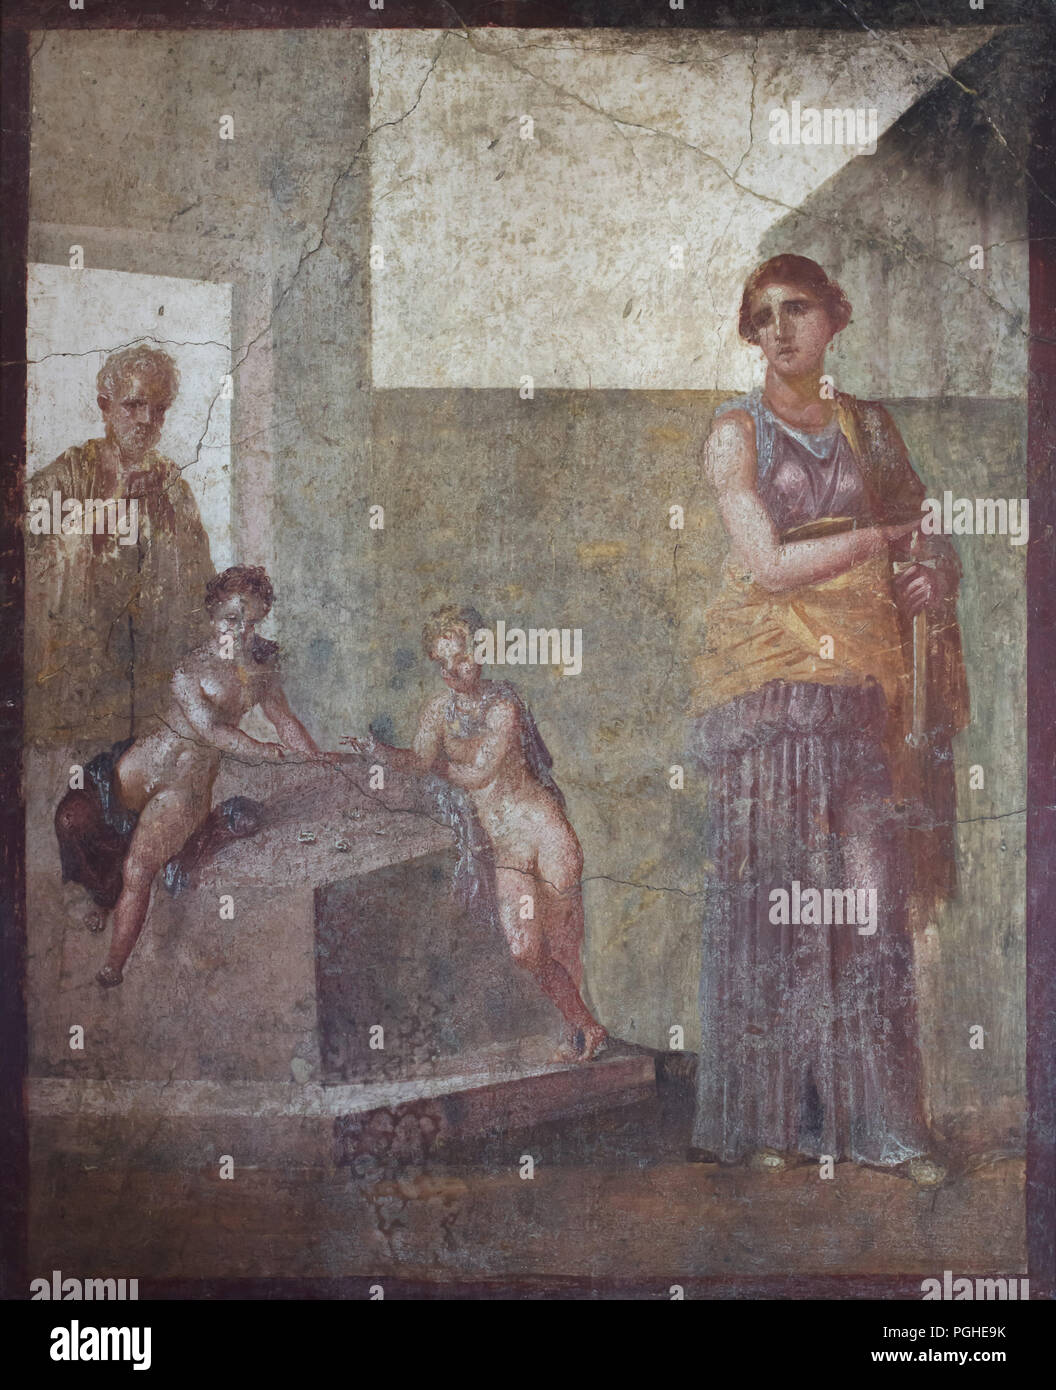 Medea Planung der Mord an ihren Kindern dargestellt in der römischen Fresko aus dem Haus der Dioskuren (Casa dei Dioscuri) in Pompeji (62-79 N.CHR.), nun im Nationalen Archäologischen Museum (Museo Archeologico Nazionale di Napoli) in Neapel, Kampanien, Italien. In ihrer Unwissenheit, die Sie spielen Knucklebones, während ein älterer Lehrer ihnen hilft. Das Fresko wird gedacht, um aus einer Arbeit von Timomachos von Byzanz, die um die Mitte des 1. vorchristlichen Jahrhunderts aktiv war abzuleiten. Stockfoto